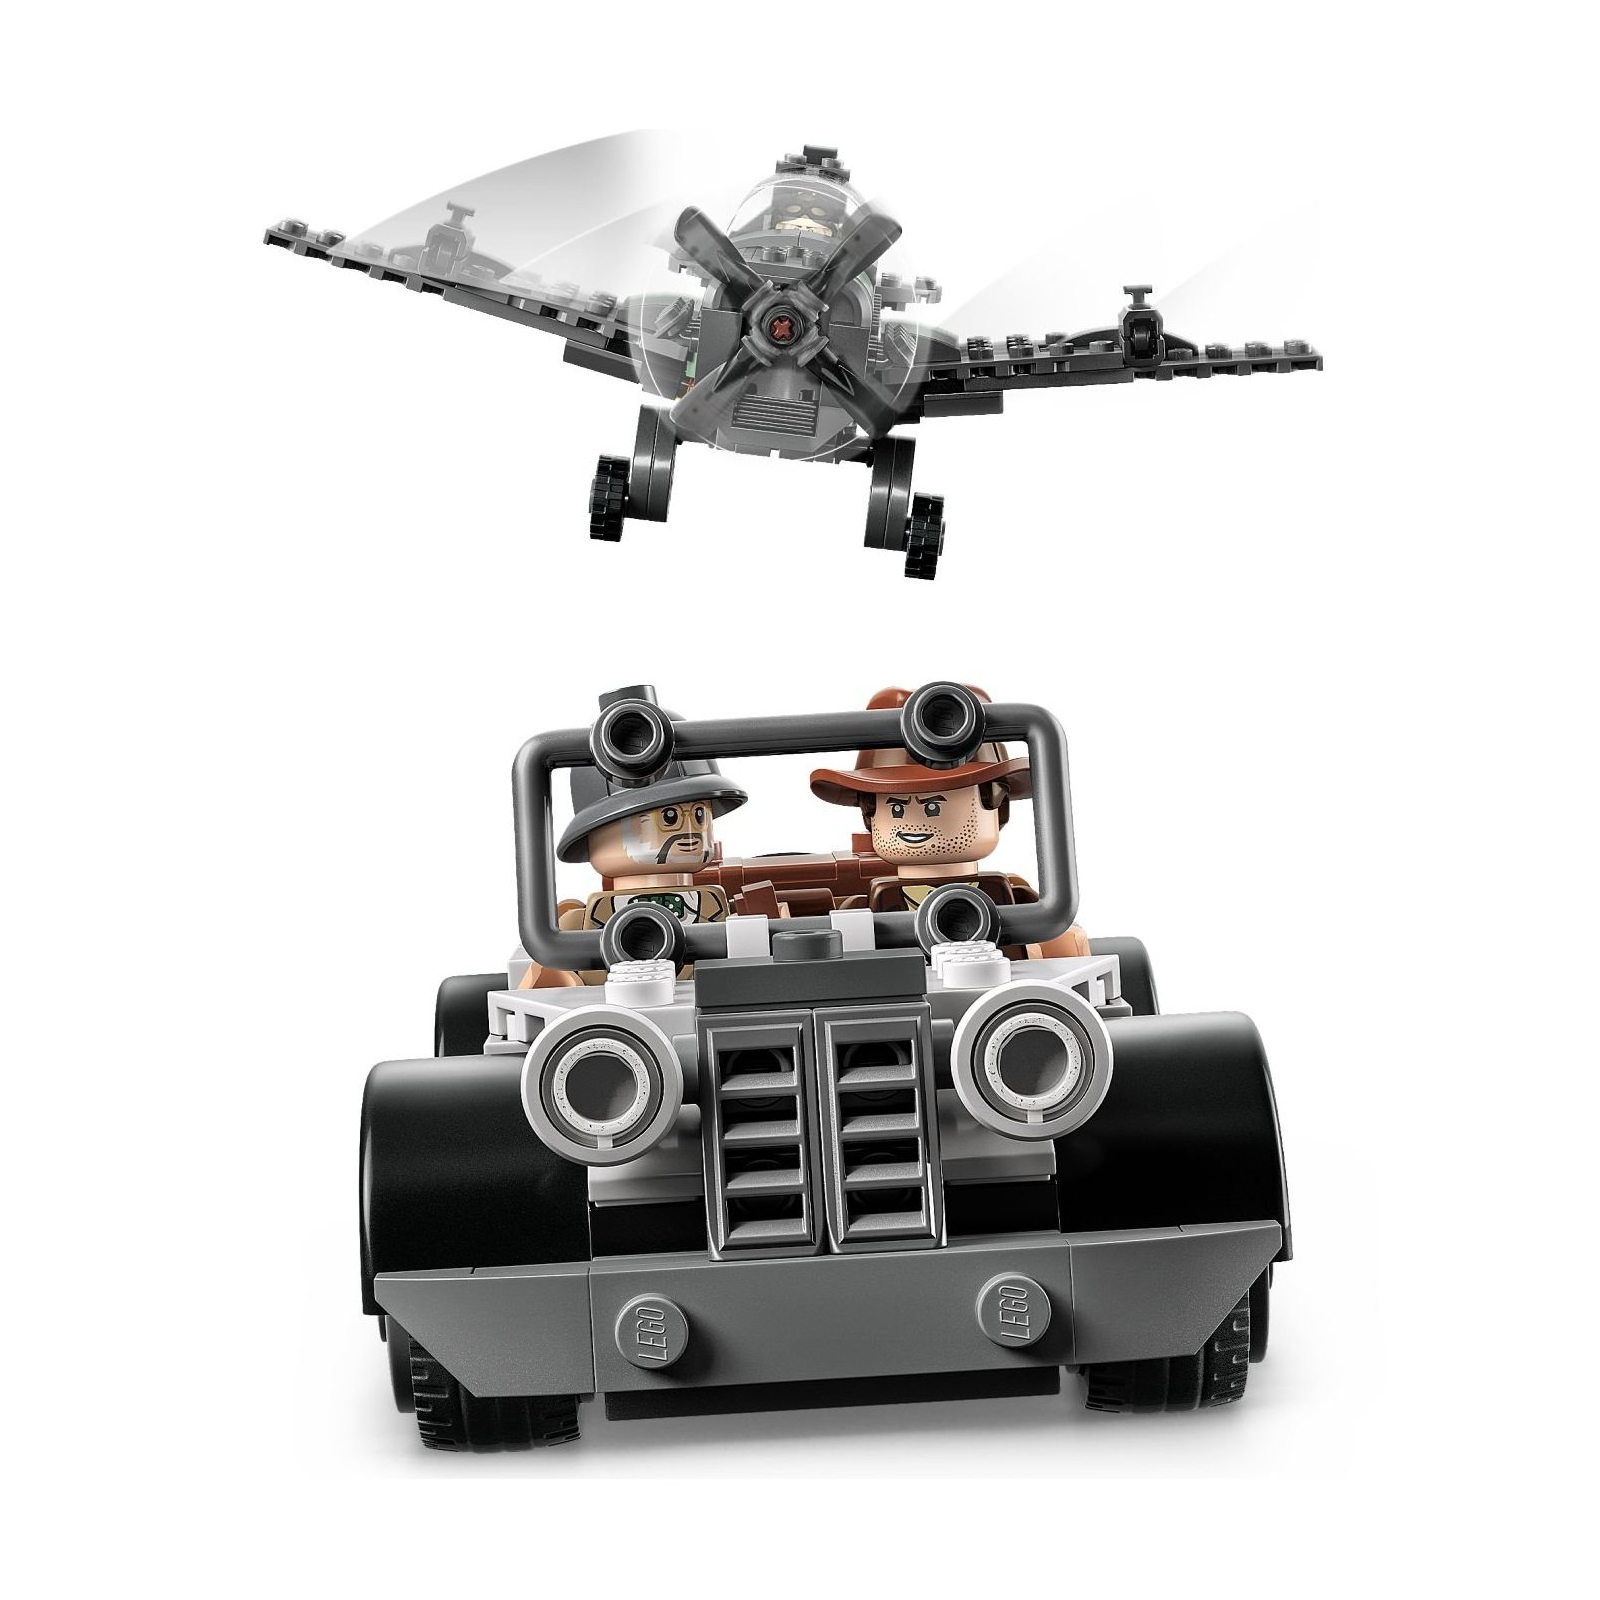 Конструктор LEGO Indiana Jones Преследование истребителя (77012) изображение 5